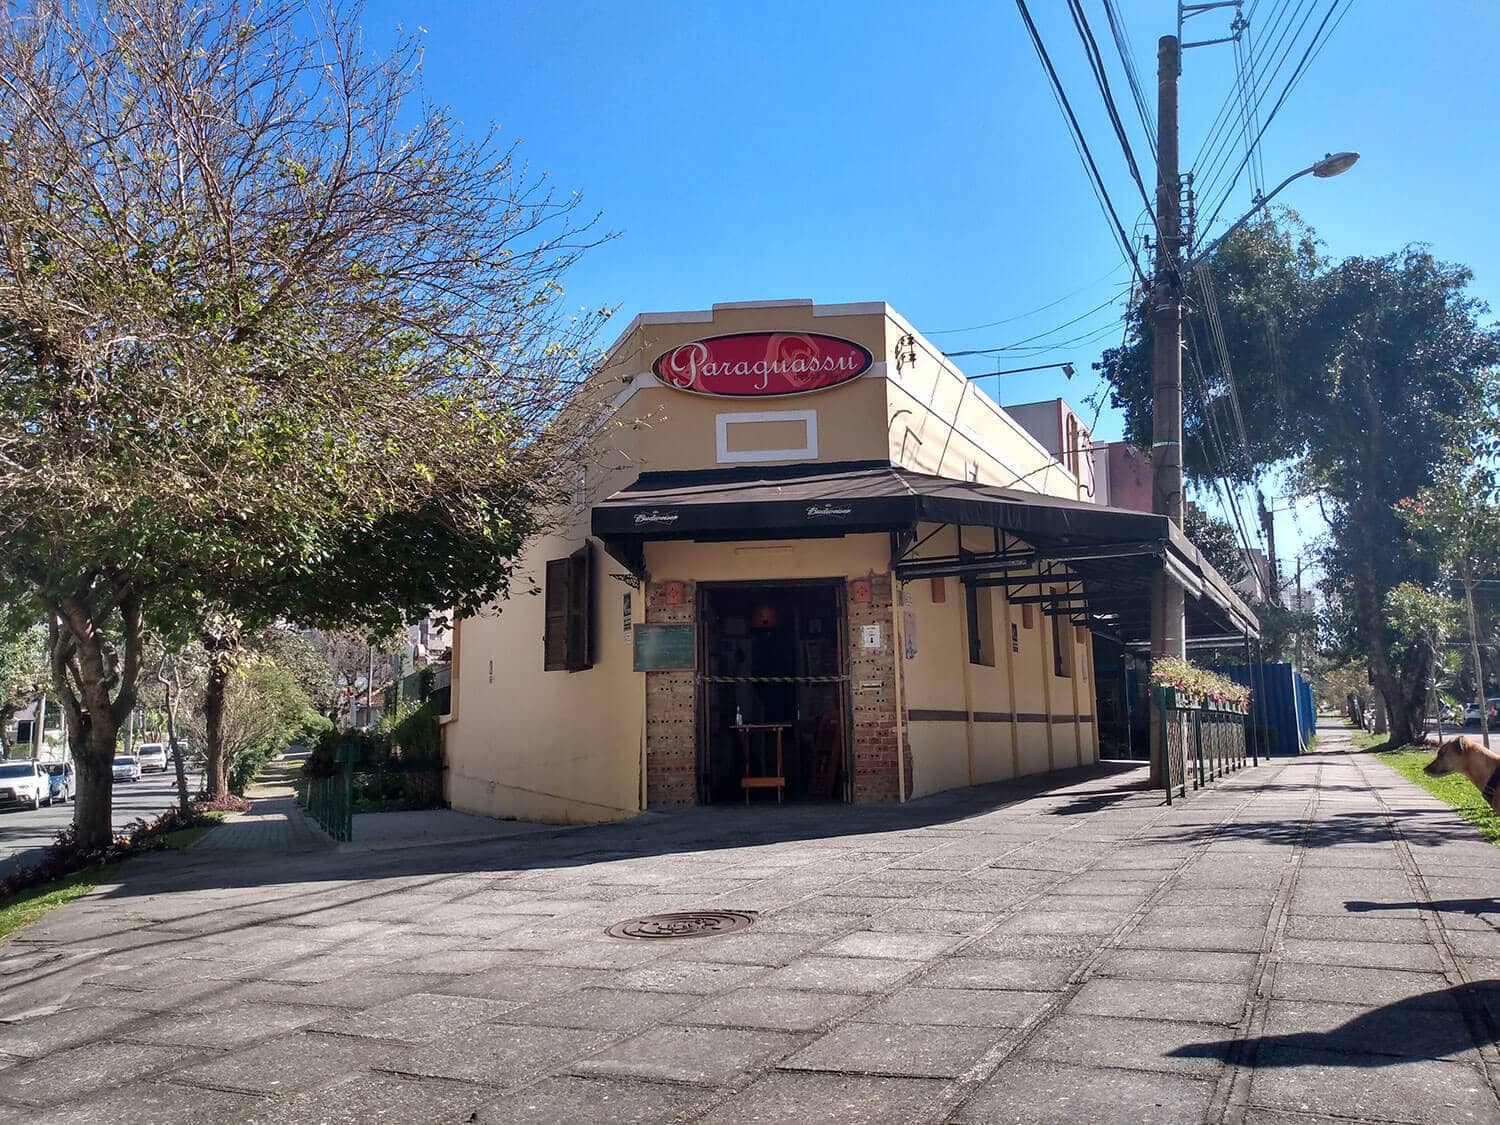 Restaurante-Paraguassu-.jpg